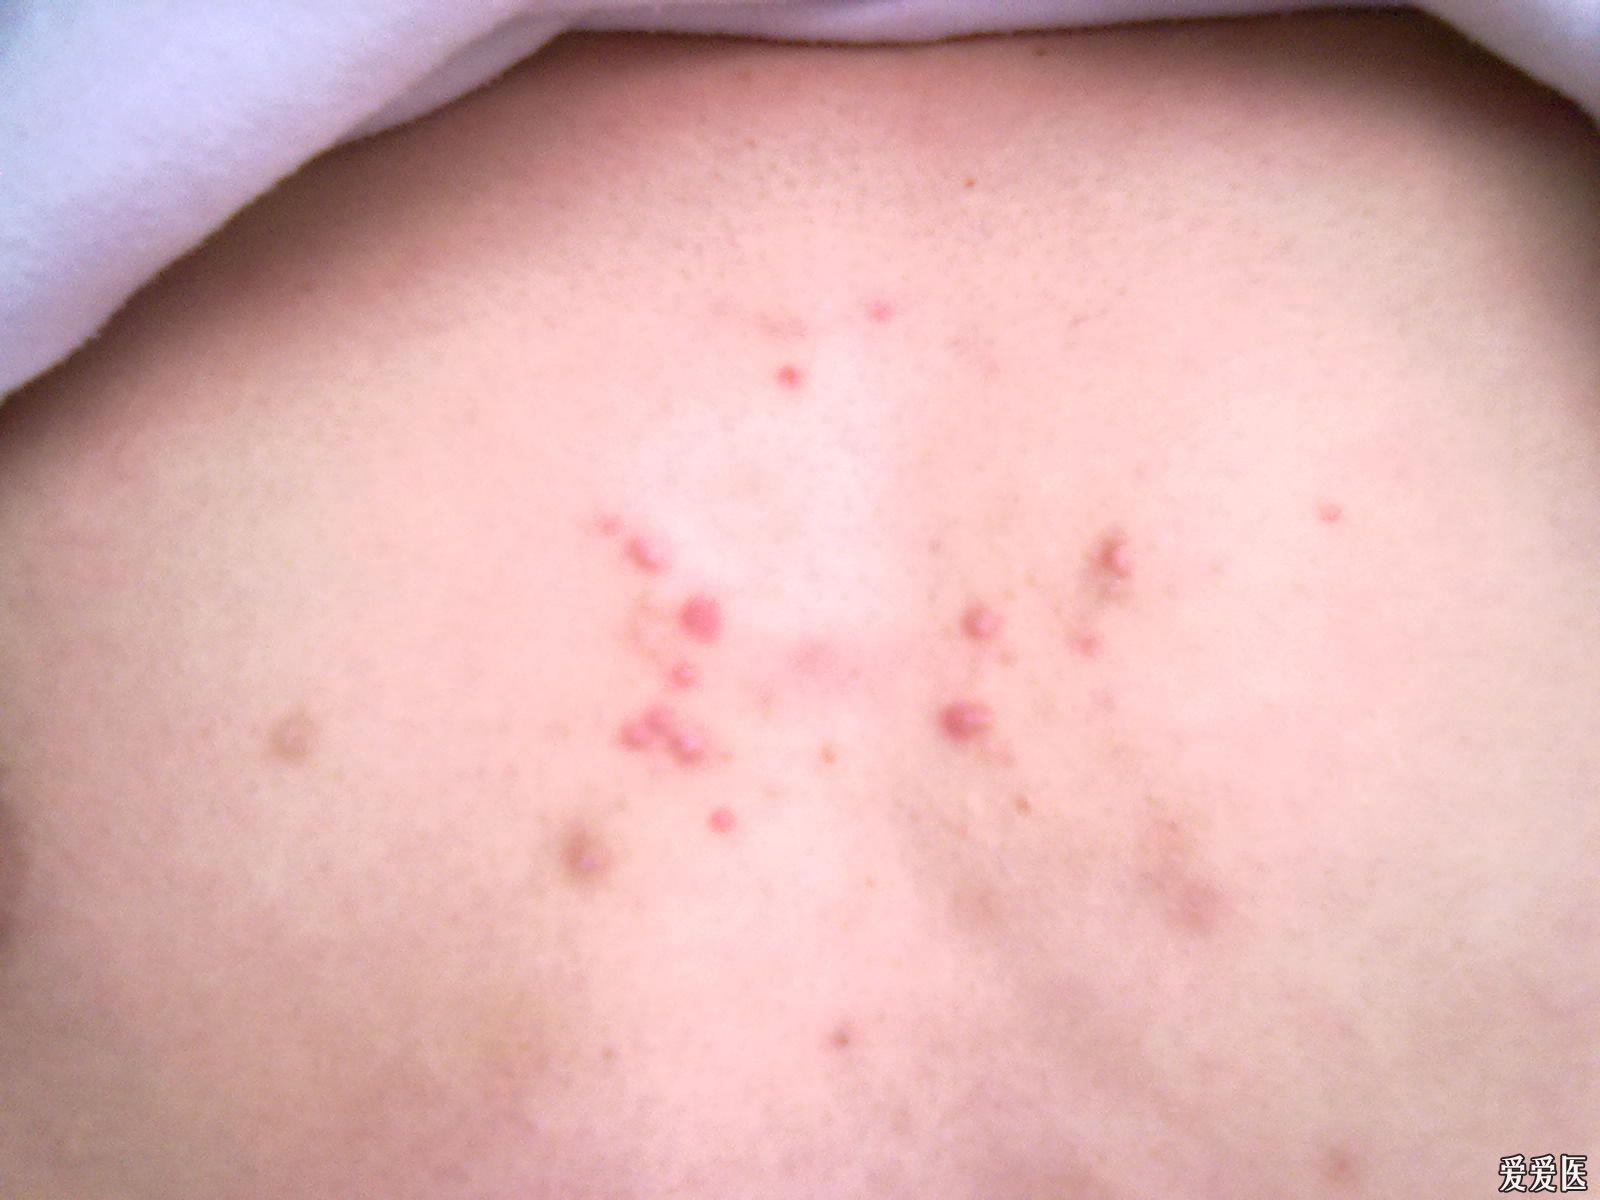 年轻男性,胸前红色小丘疹三个月,无明显瘙痒,请问大家是什么病啊